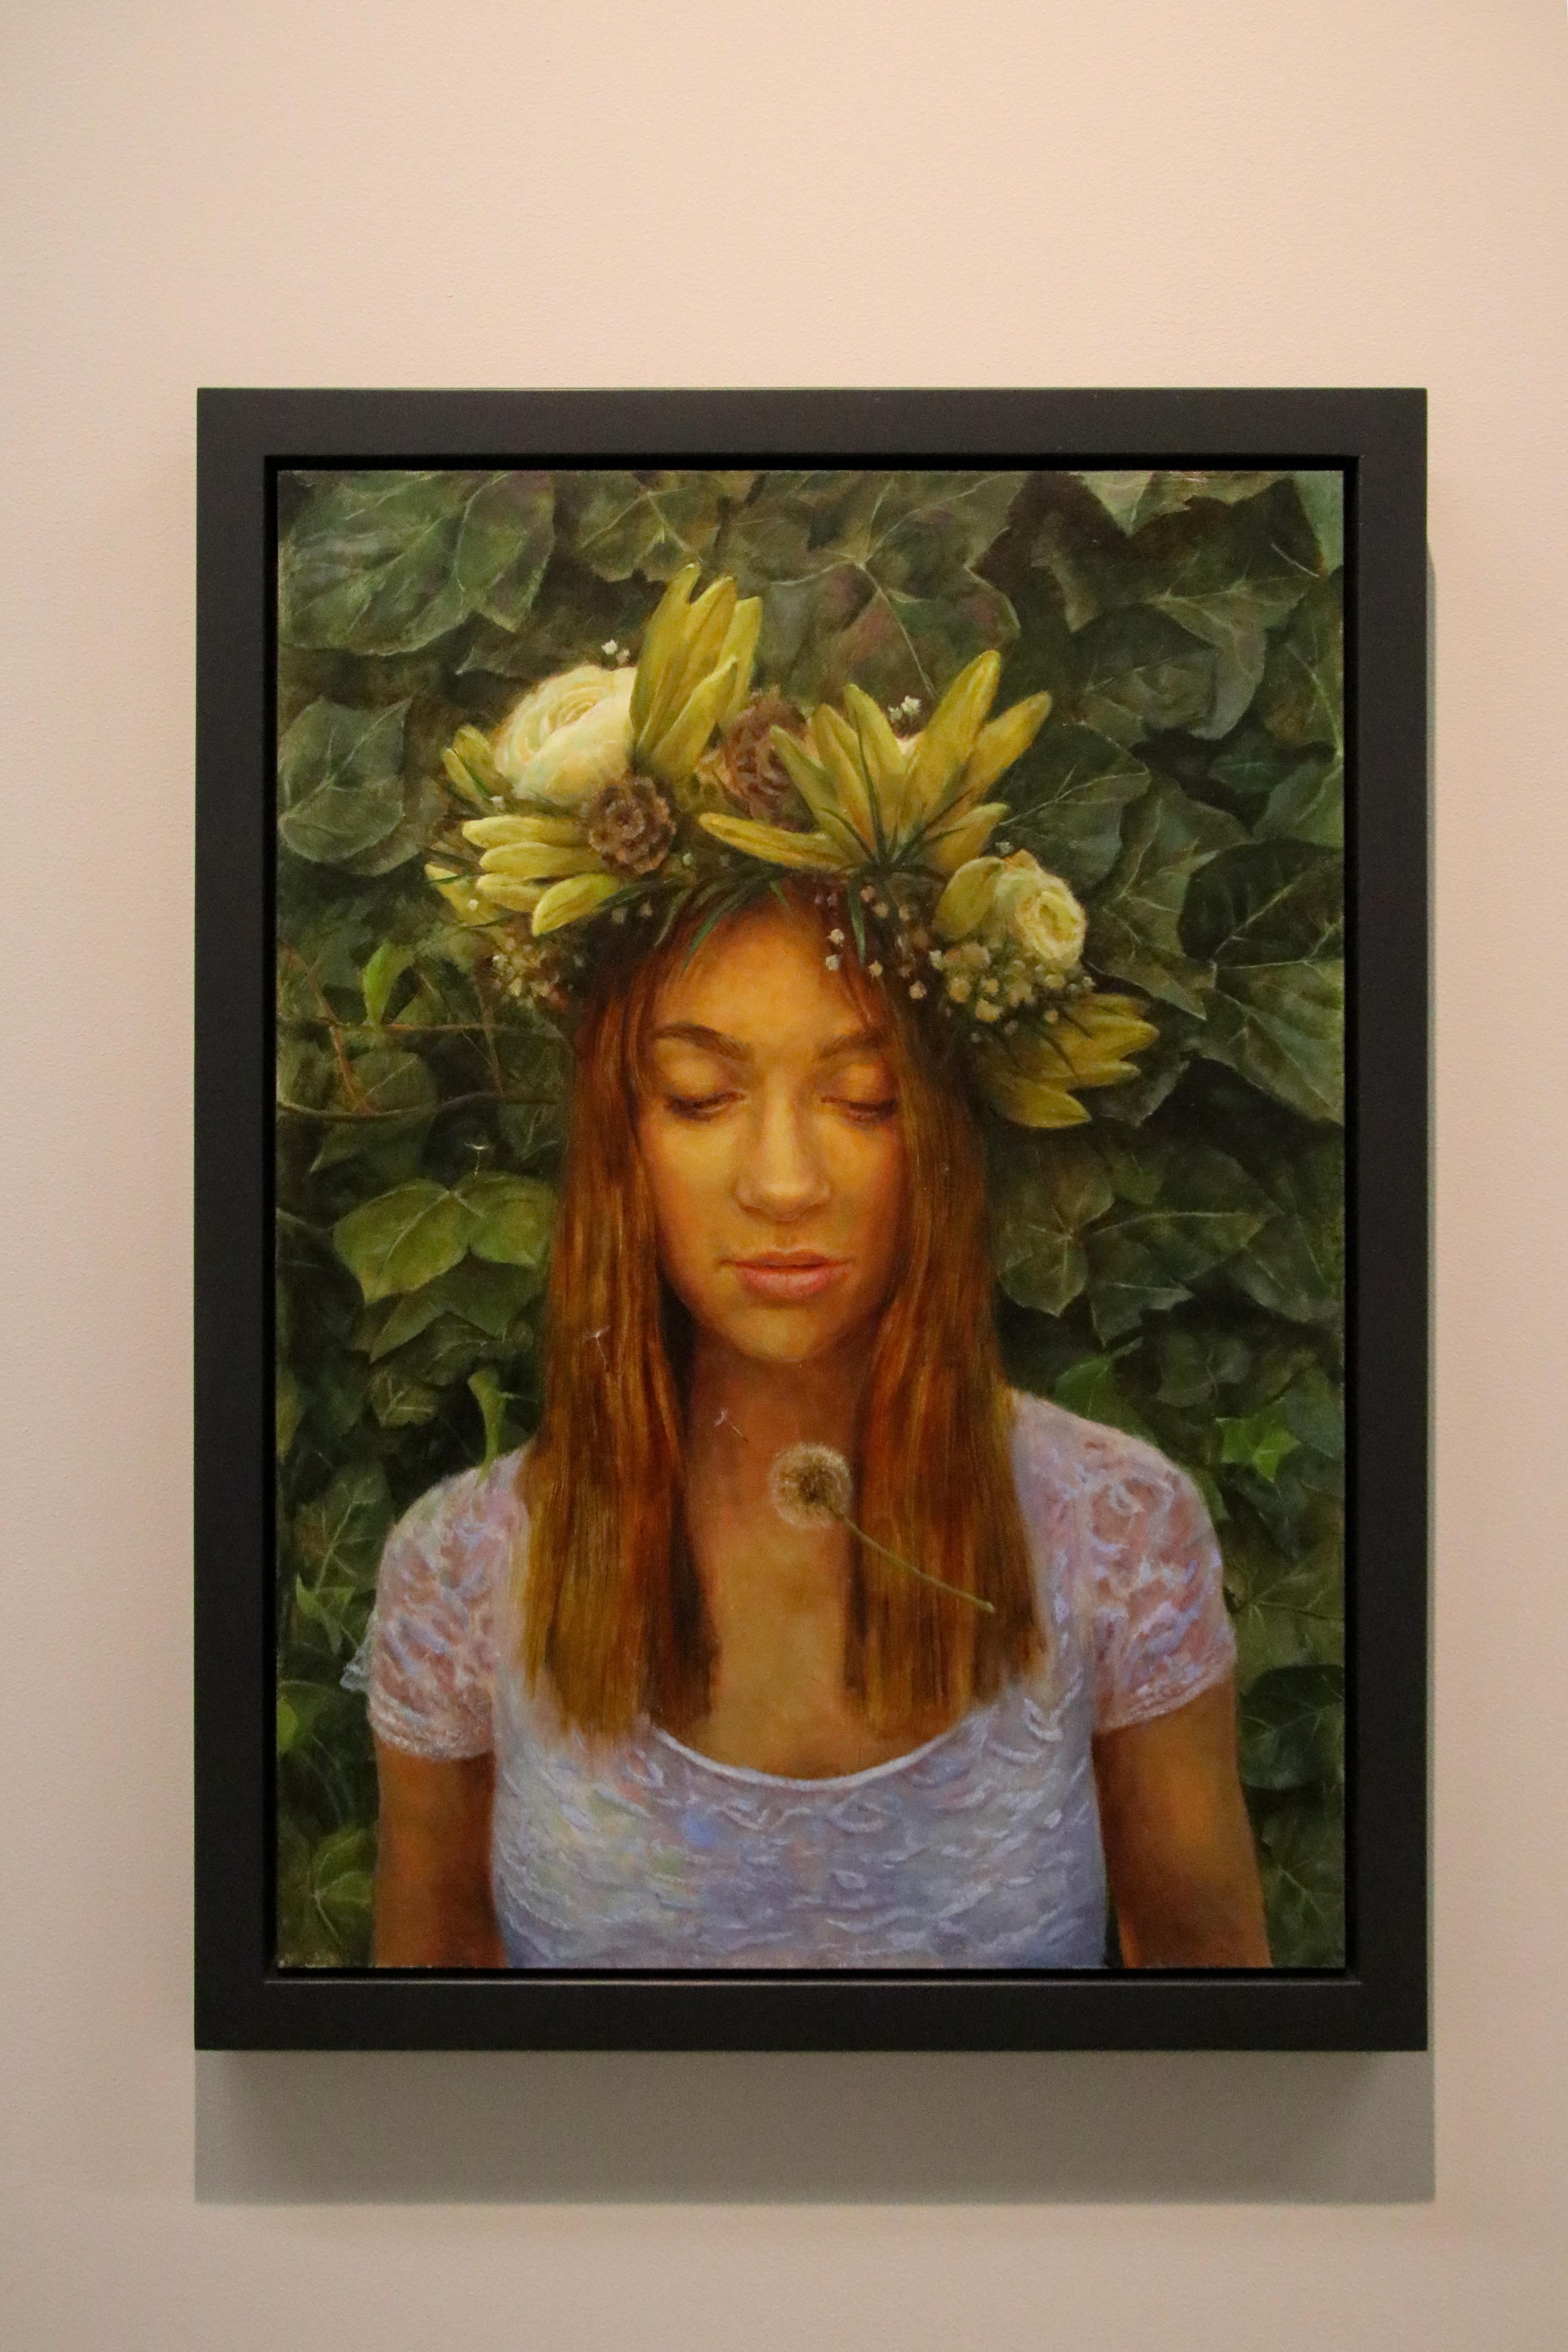 Freier Geist – zeitgenössisches Porträtgemälde eines jungen Mädchens aus dem 21. Jahrhundert  – Painting von Erik van Elven